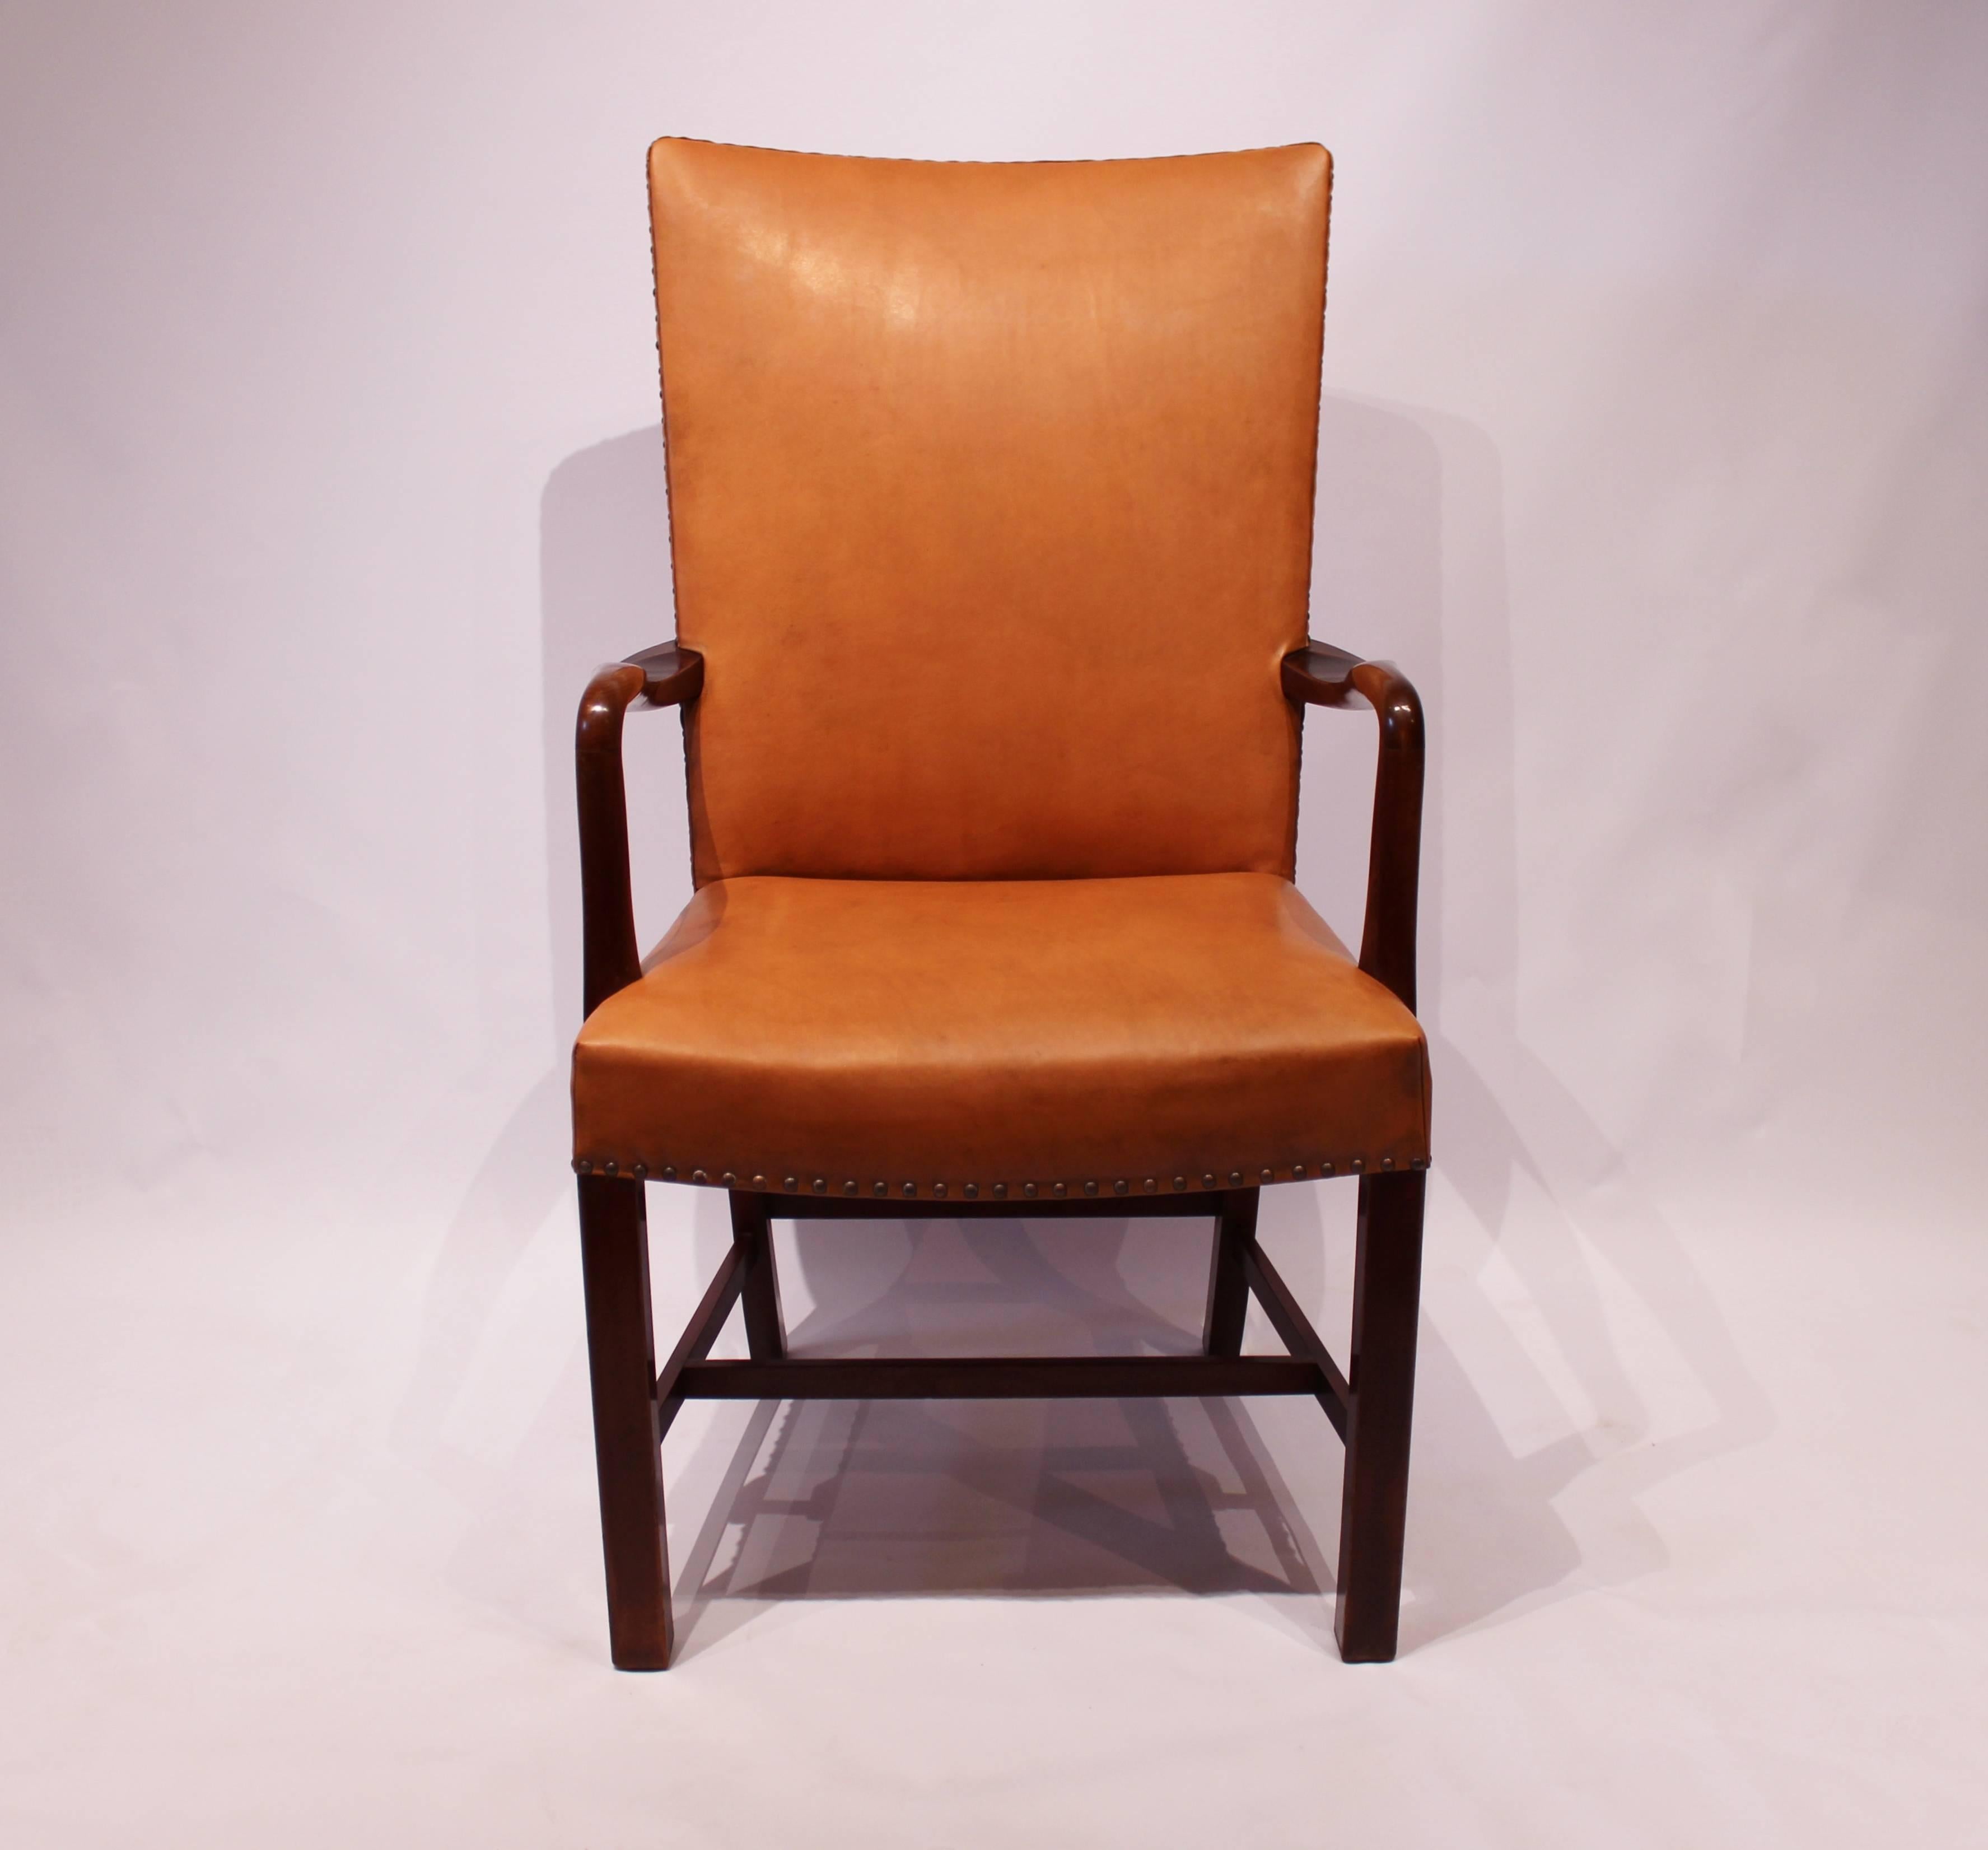 Sessel mit cognacfarbenem, elegantem Lederbezug und Messingstiften aus poliertem, dunklem Holz von Fritz Hansen aus dem Jahr 1944.